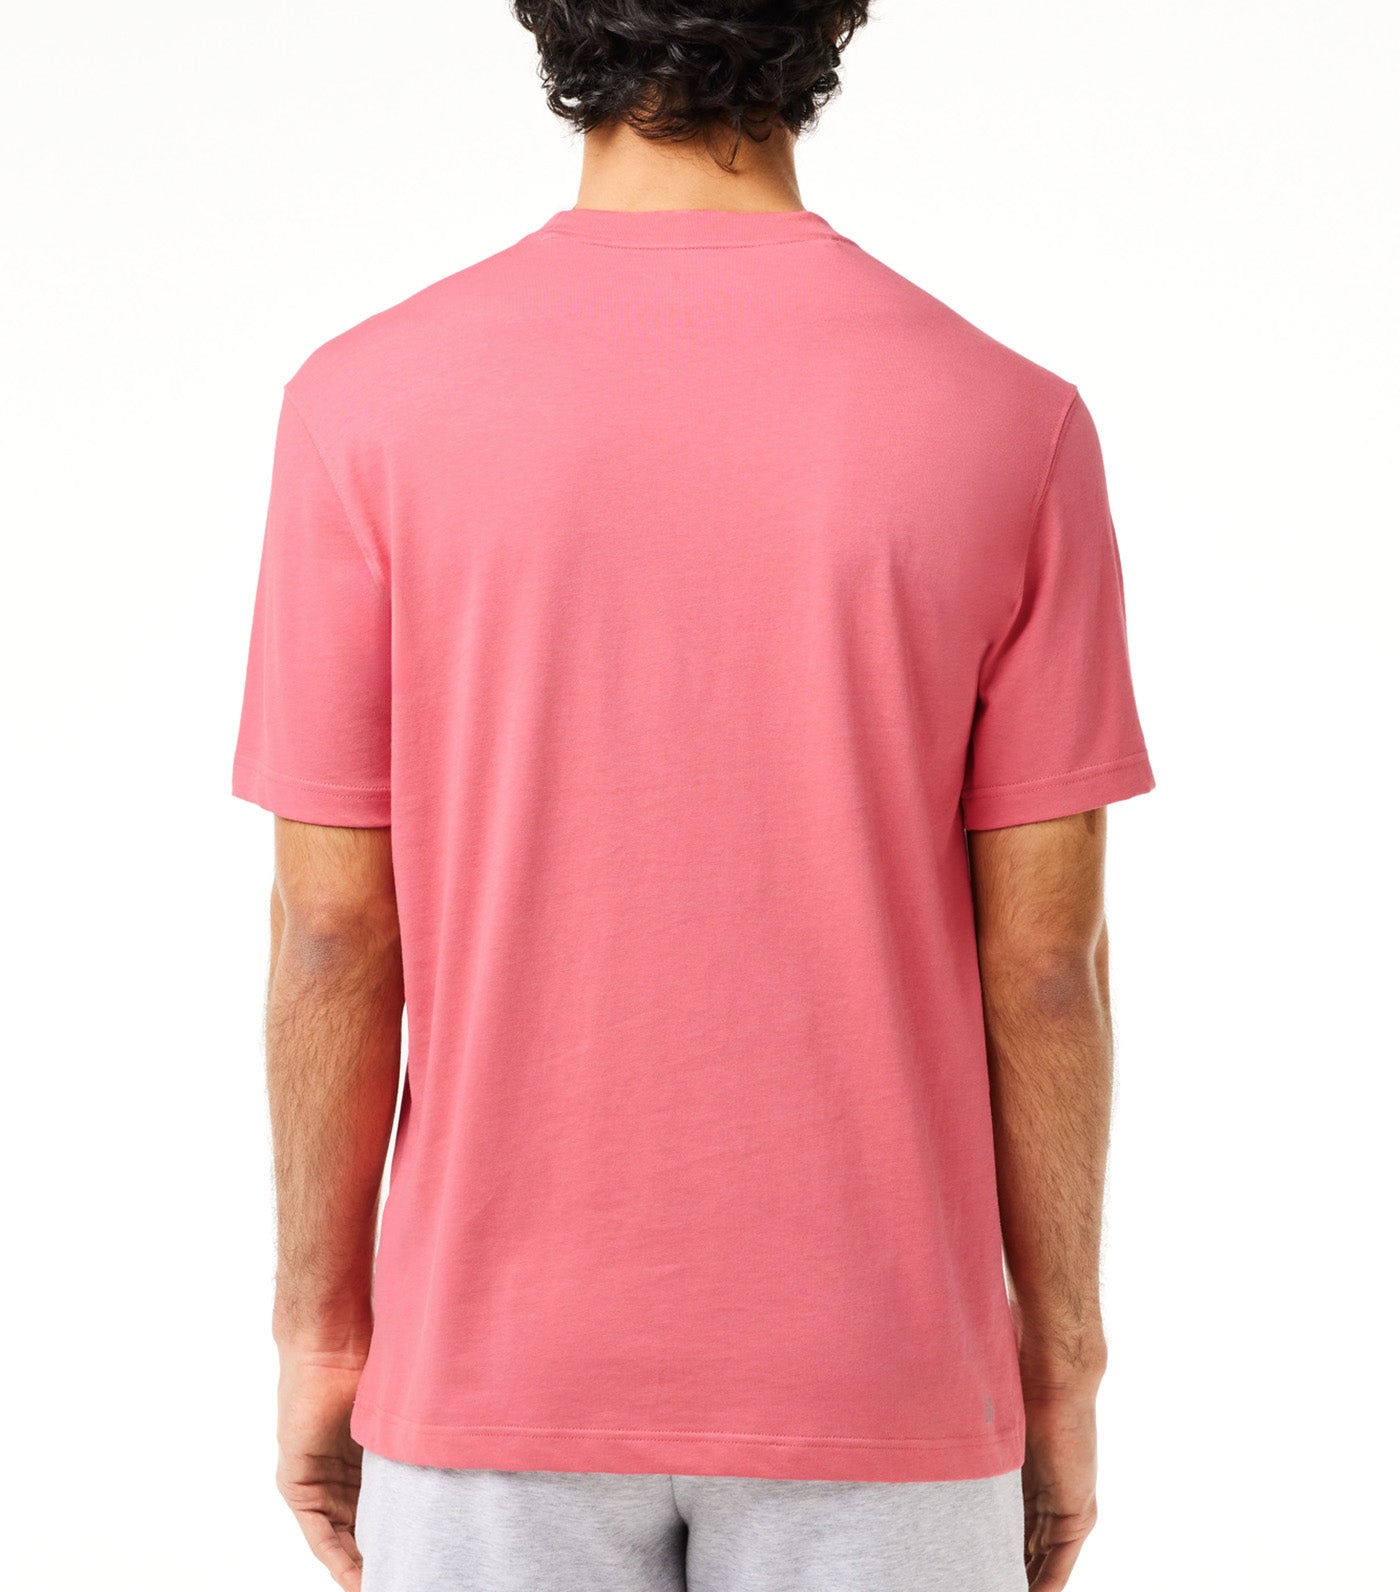 Men’s Lacoste SPORT Crew Neck Breathable Cotton Blend T-shirt Alice